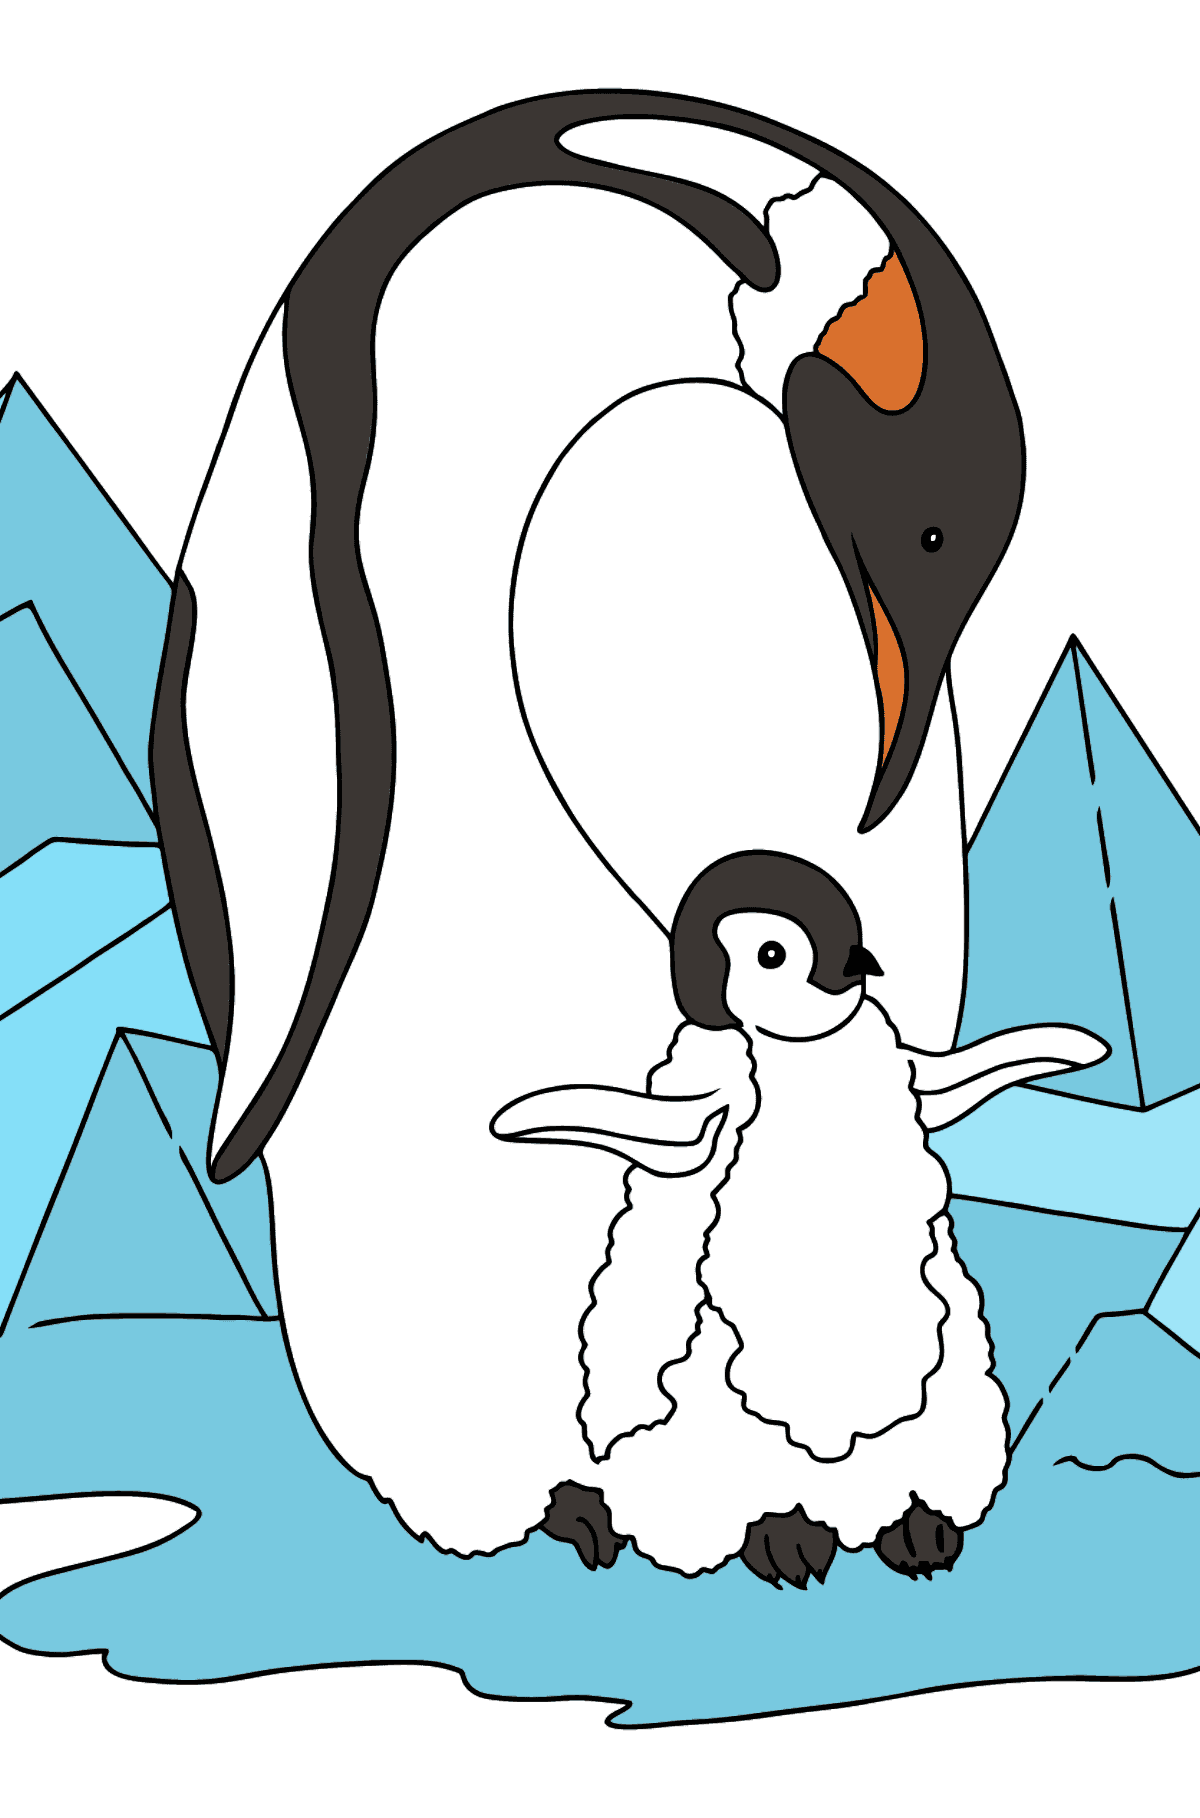 Pinguino da colorare per bambini - Disegni da colorare per bambini